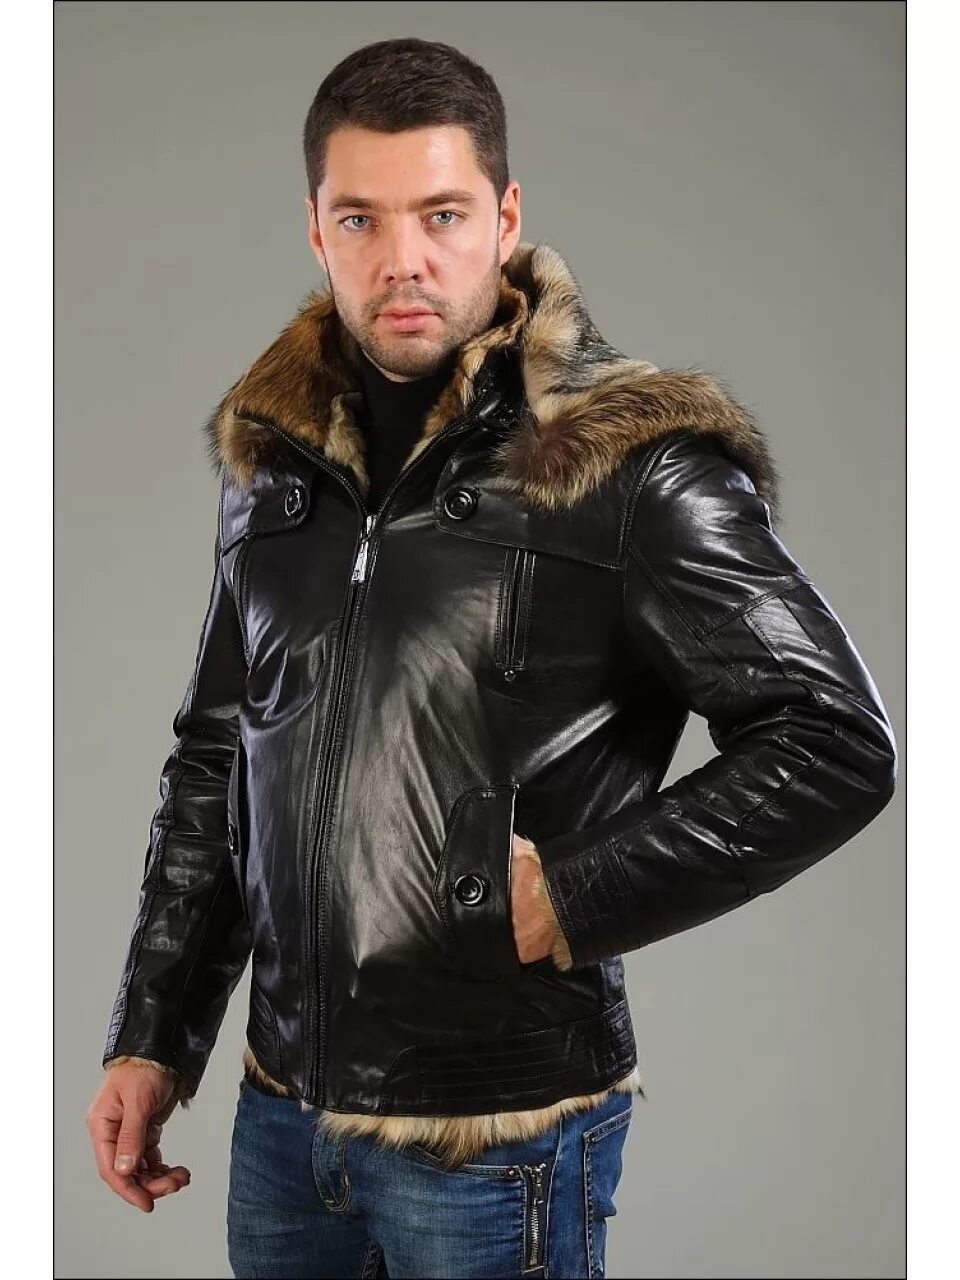 Зимние куртки натуральная кожа. Турецкая зимняя кожаная мужская куртка Canmore. Falapu куртка кожаная мужская Волчий мех. Кожаная куртка с мехом мужская. Стильная мужская куртка с мехом.